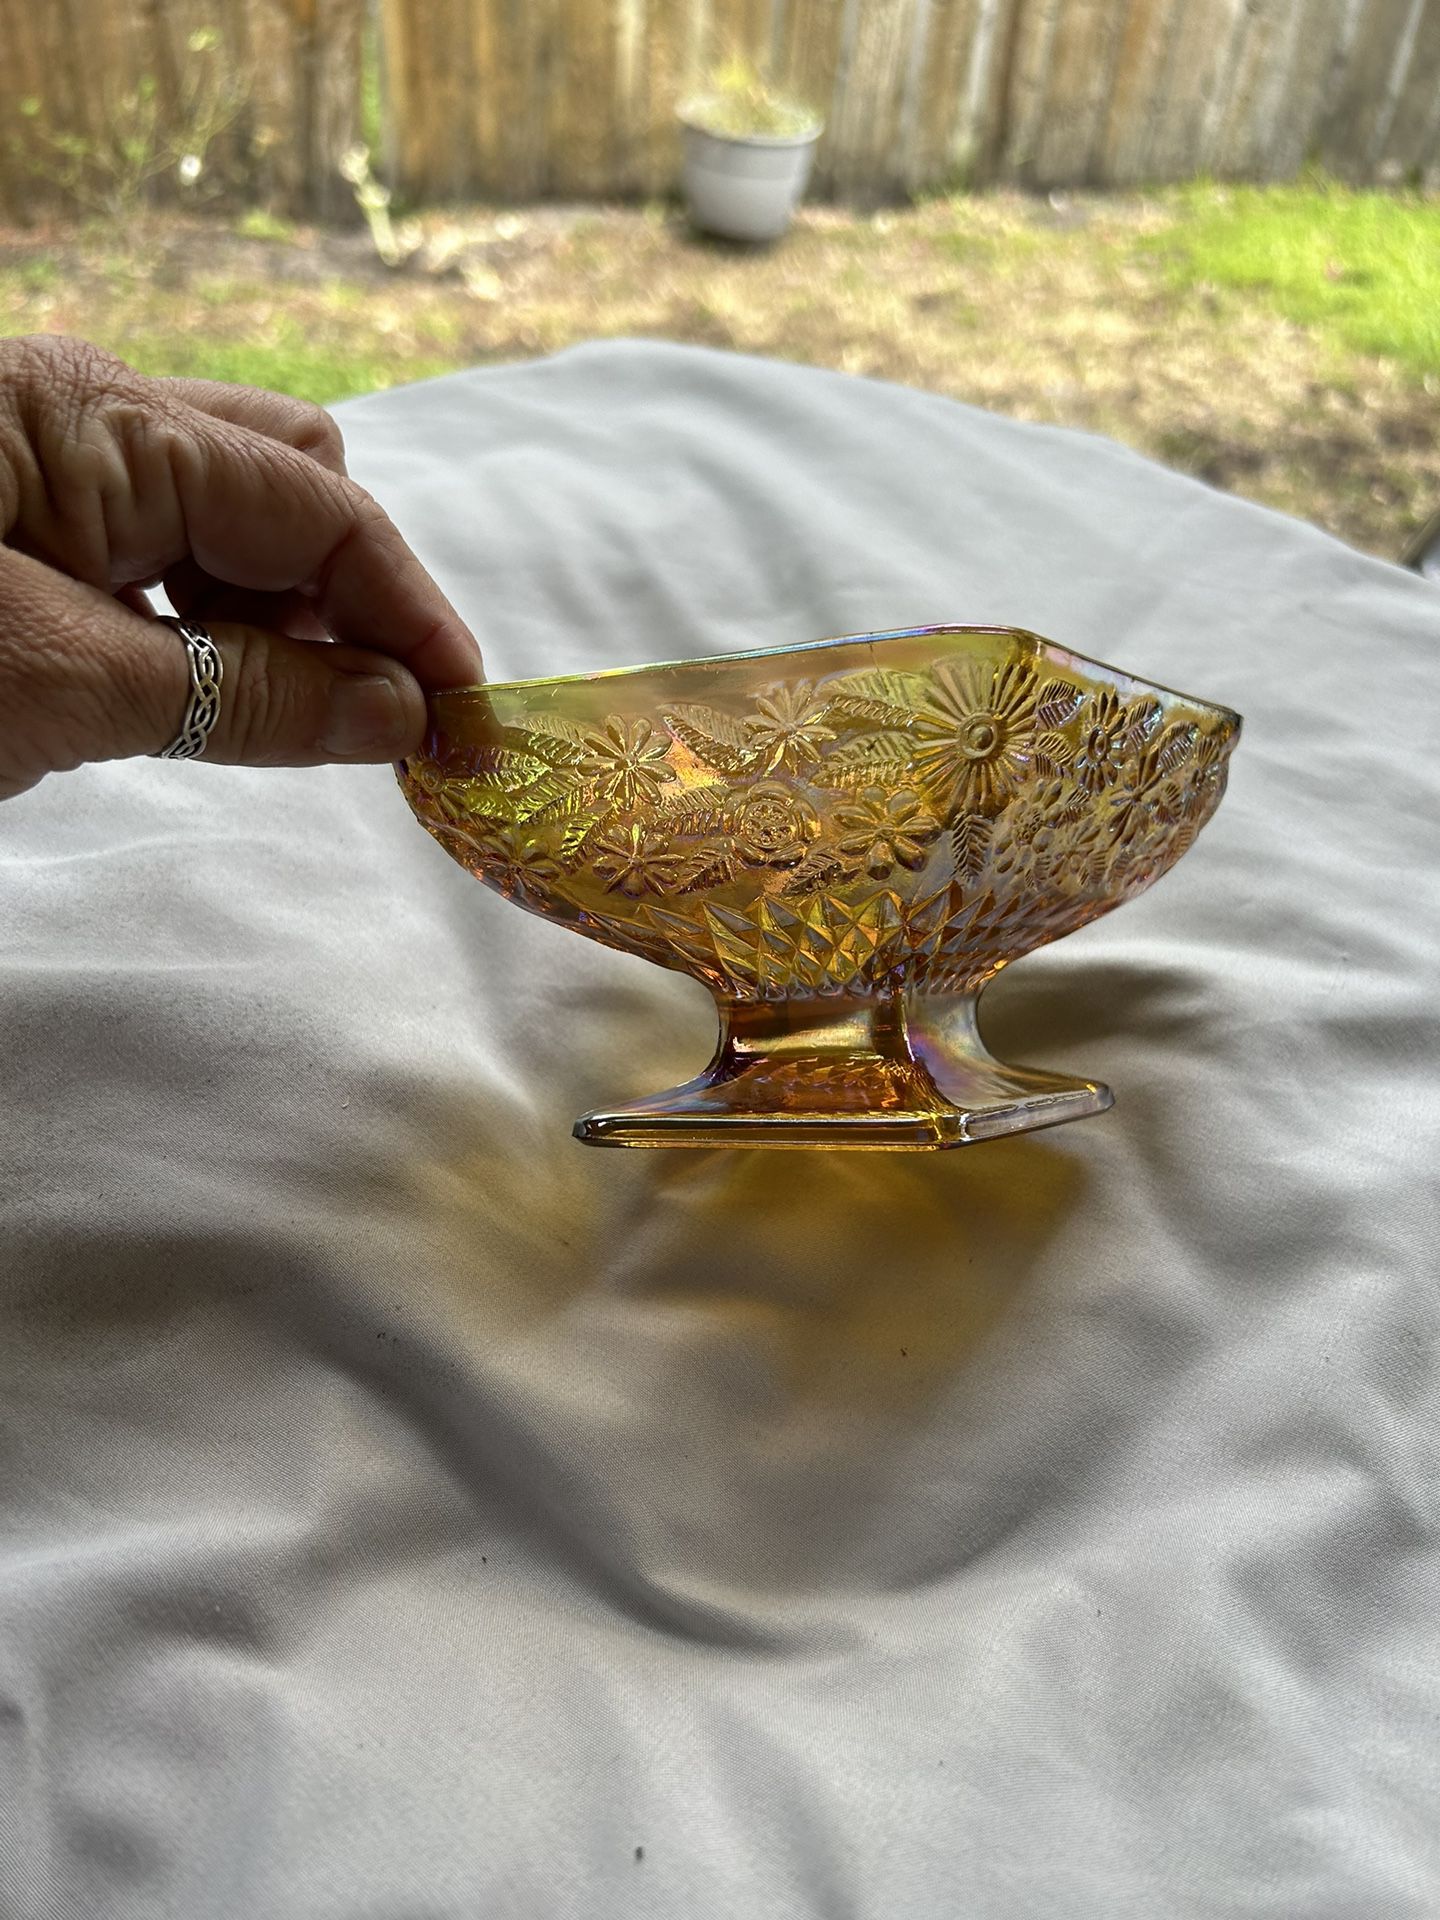 Carnival Glass Small Bowl Dish Unique Shape